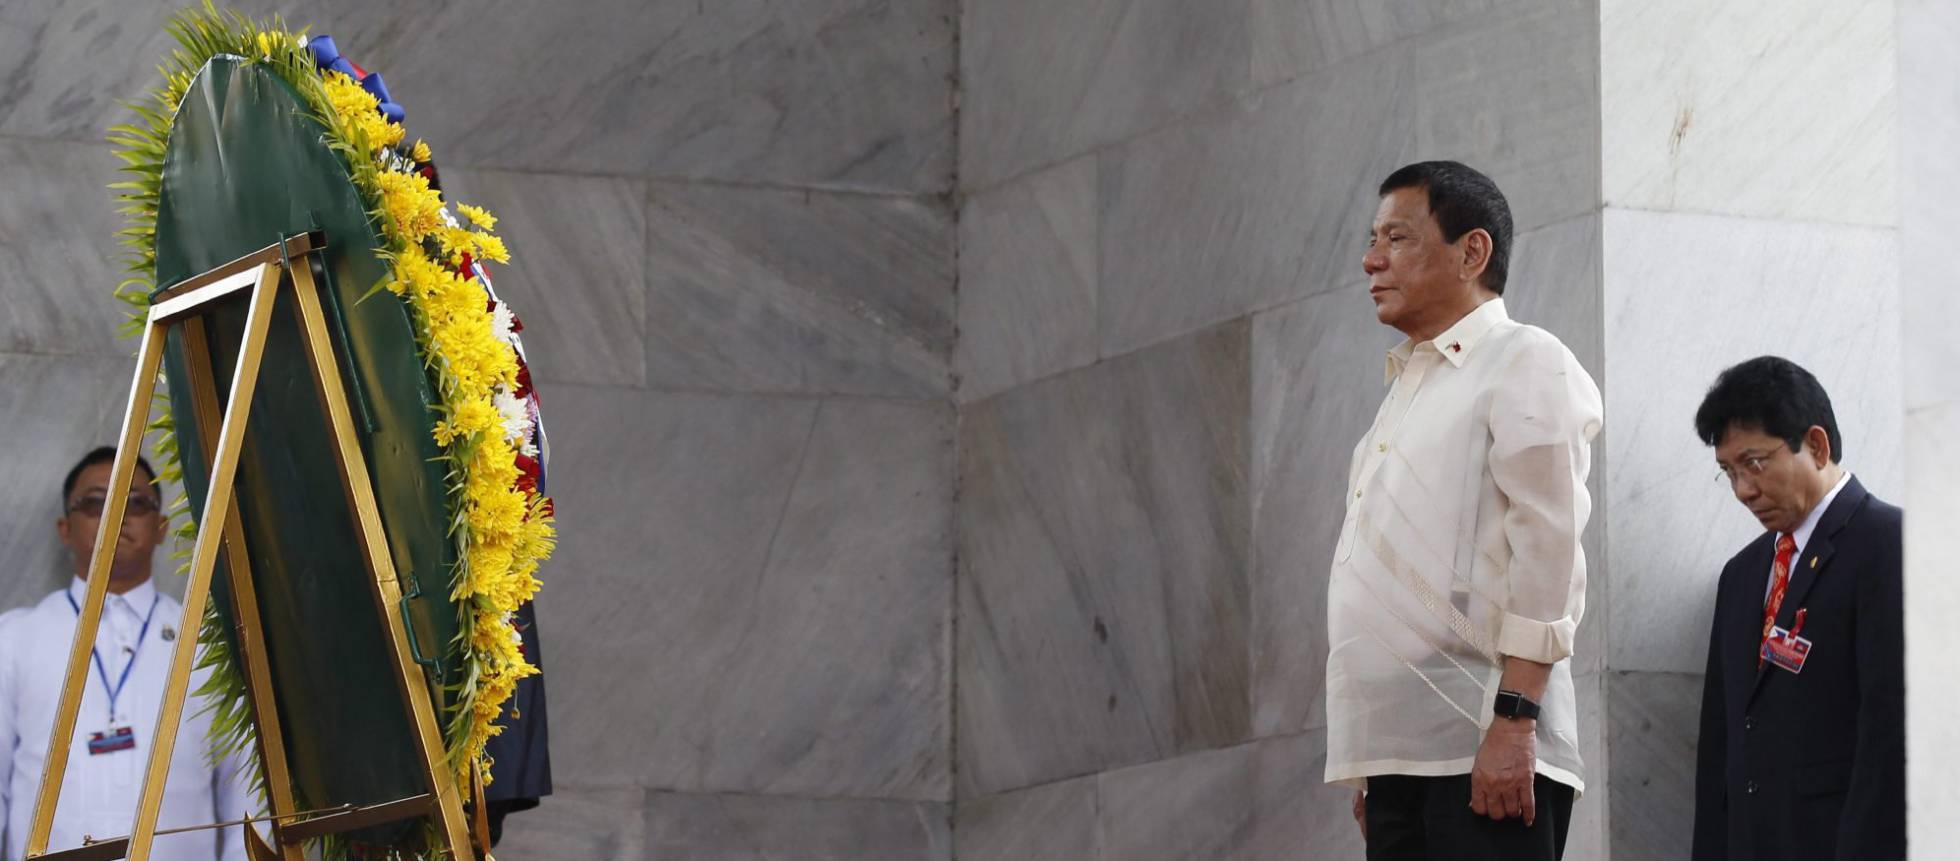 El presidente Duterte admite que mató “personalmente” a presuntos criminales